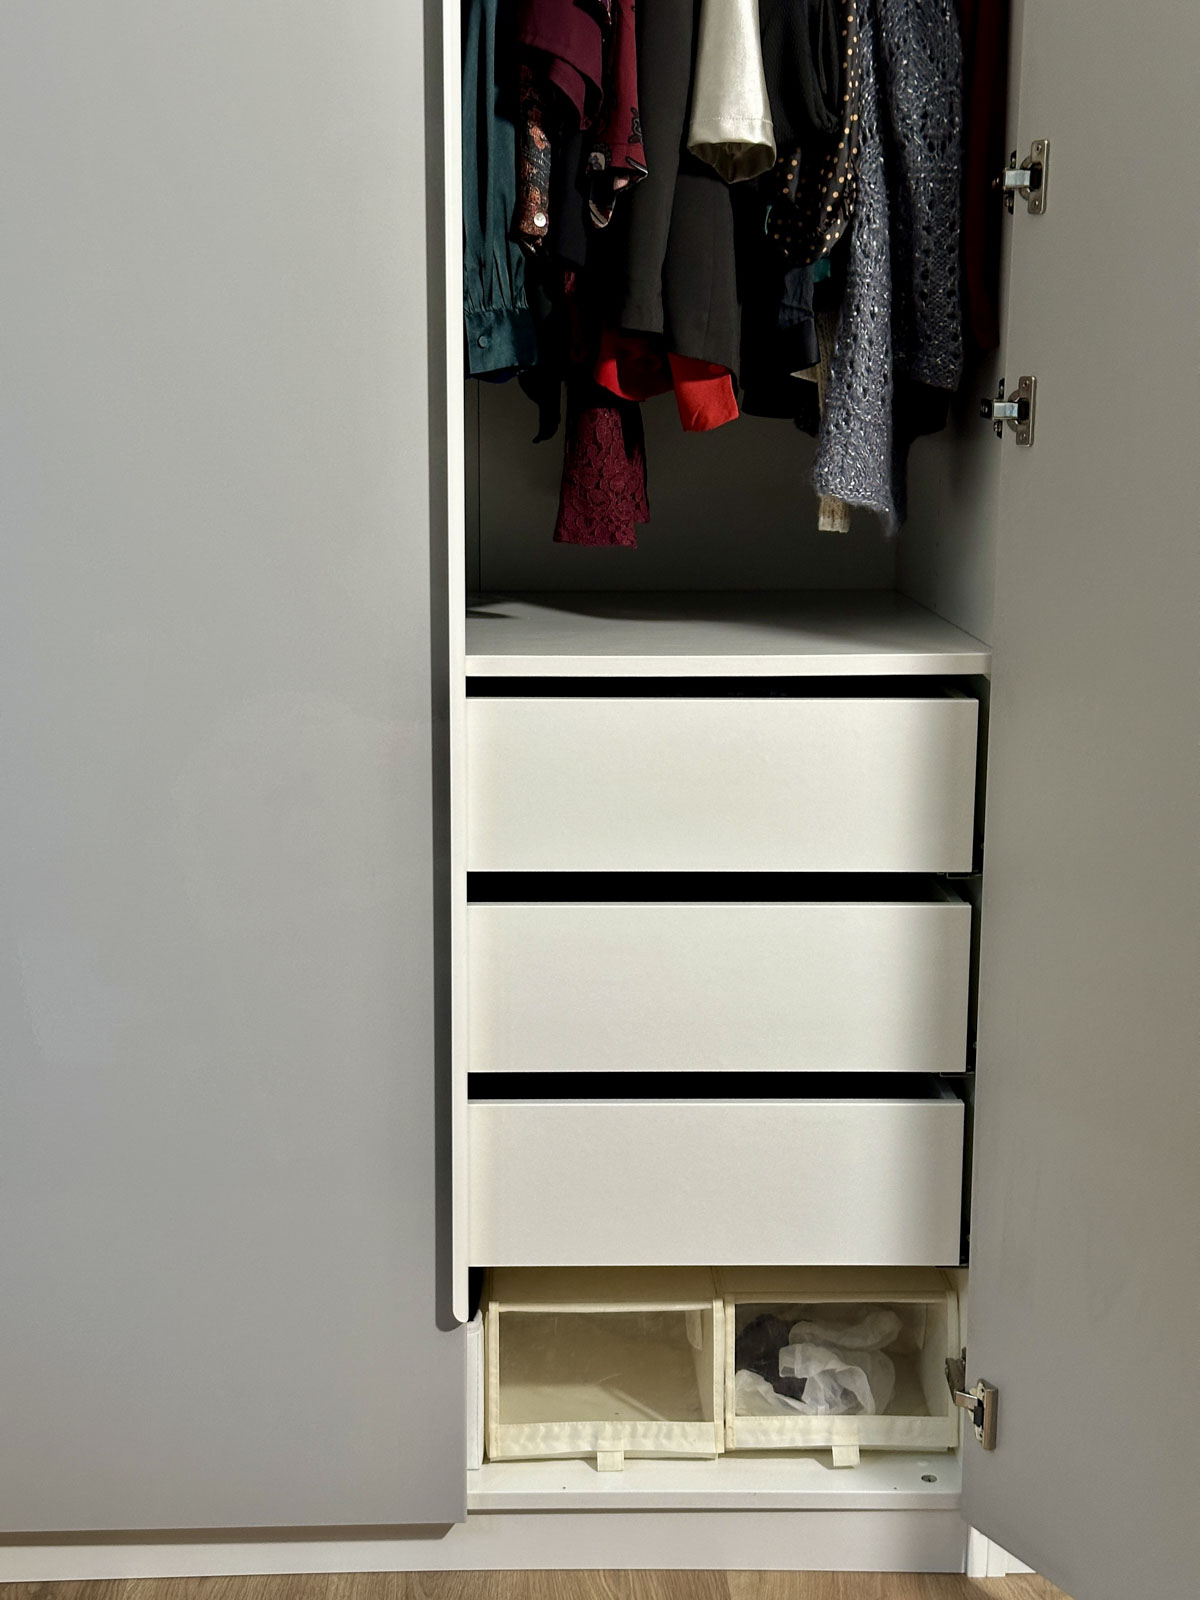 Install Your Dresser Inside the Closet